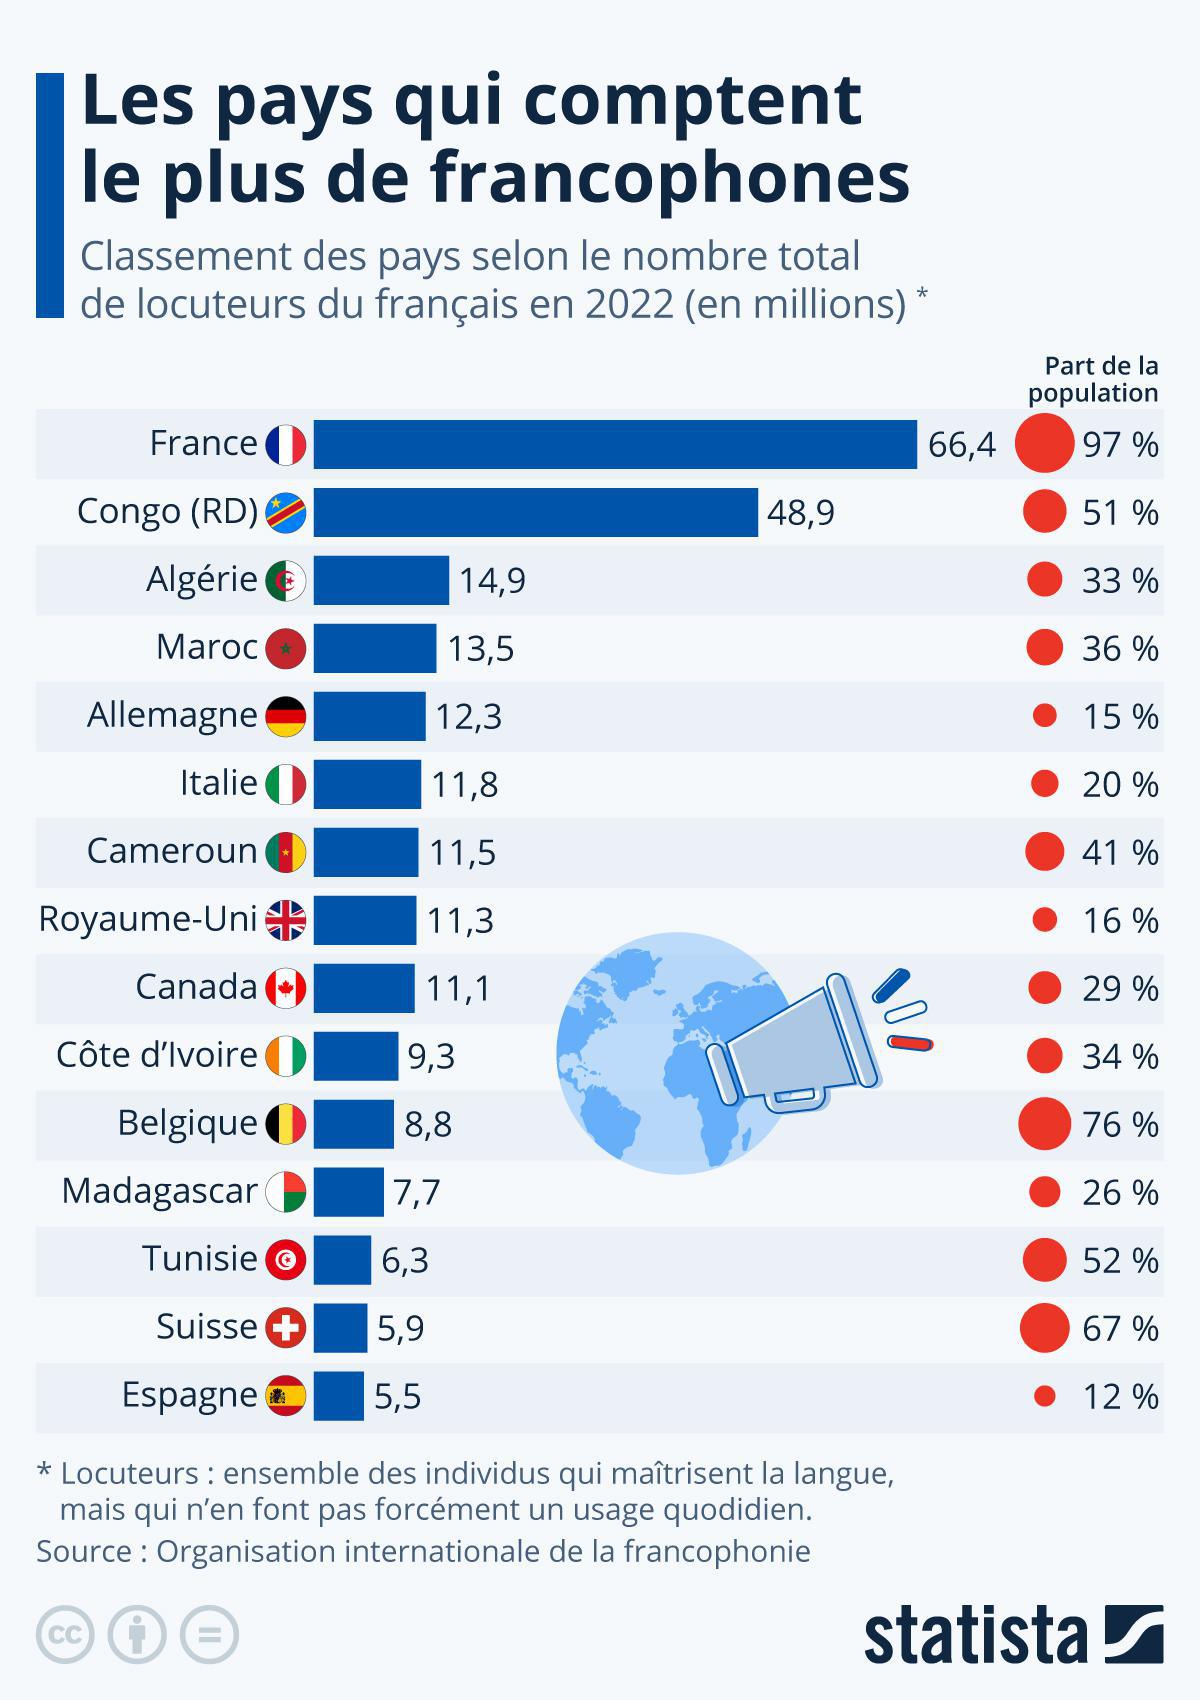 Francophonie: Les pays avec la plus forte proportion de francophones